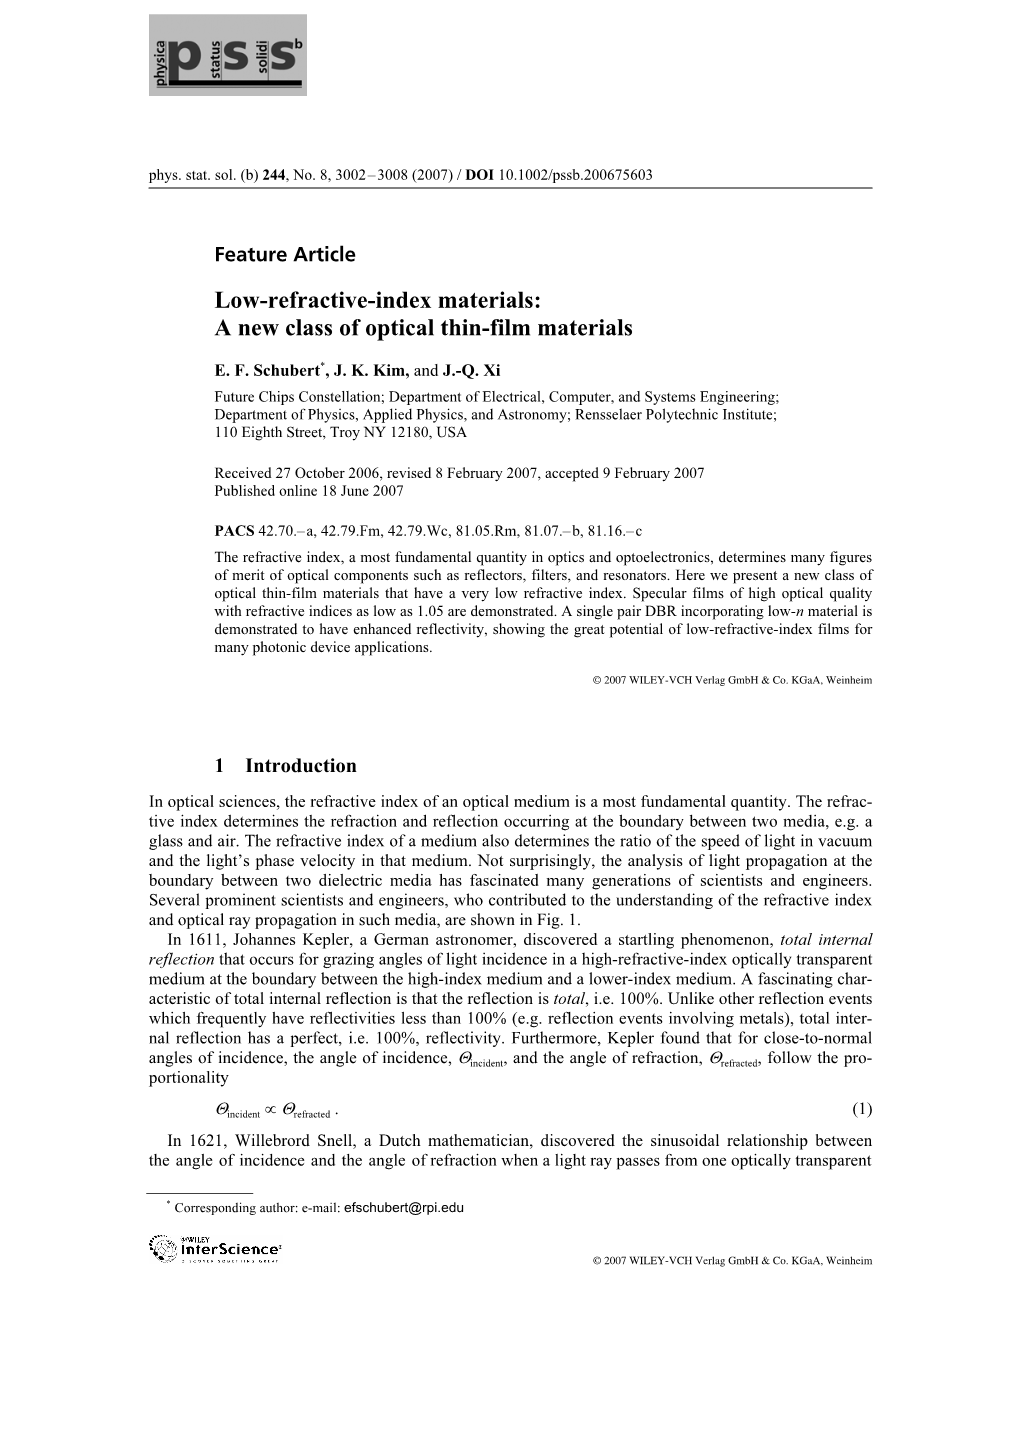 (PSS) Low-Refractive-Index Materials